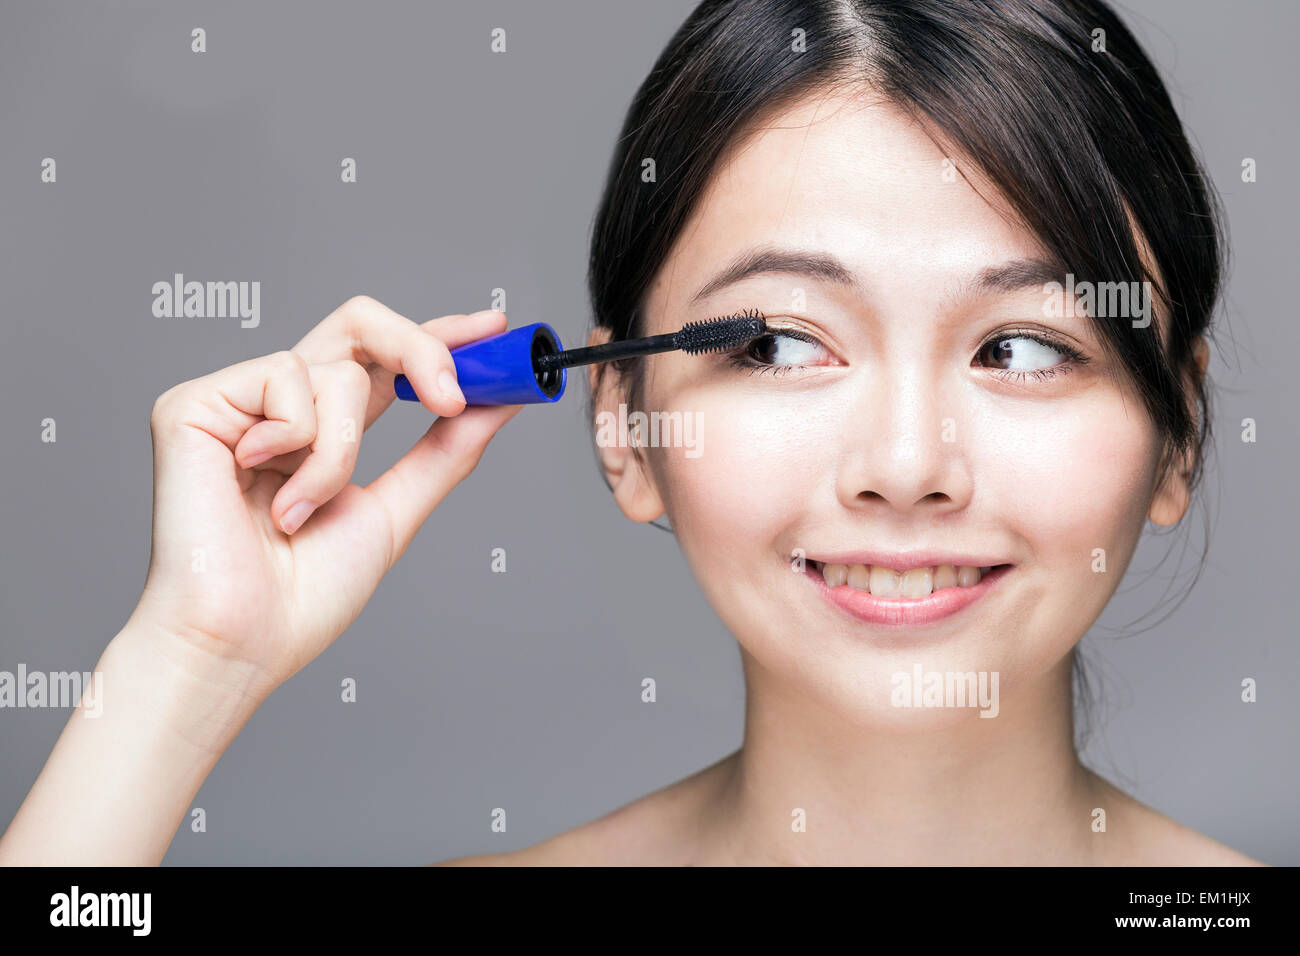 Chinese woman putting mascara on eyelashes on gray background Stock Photo